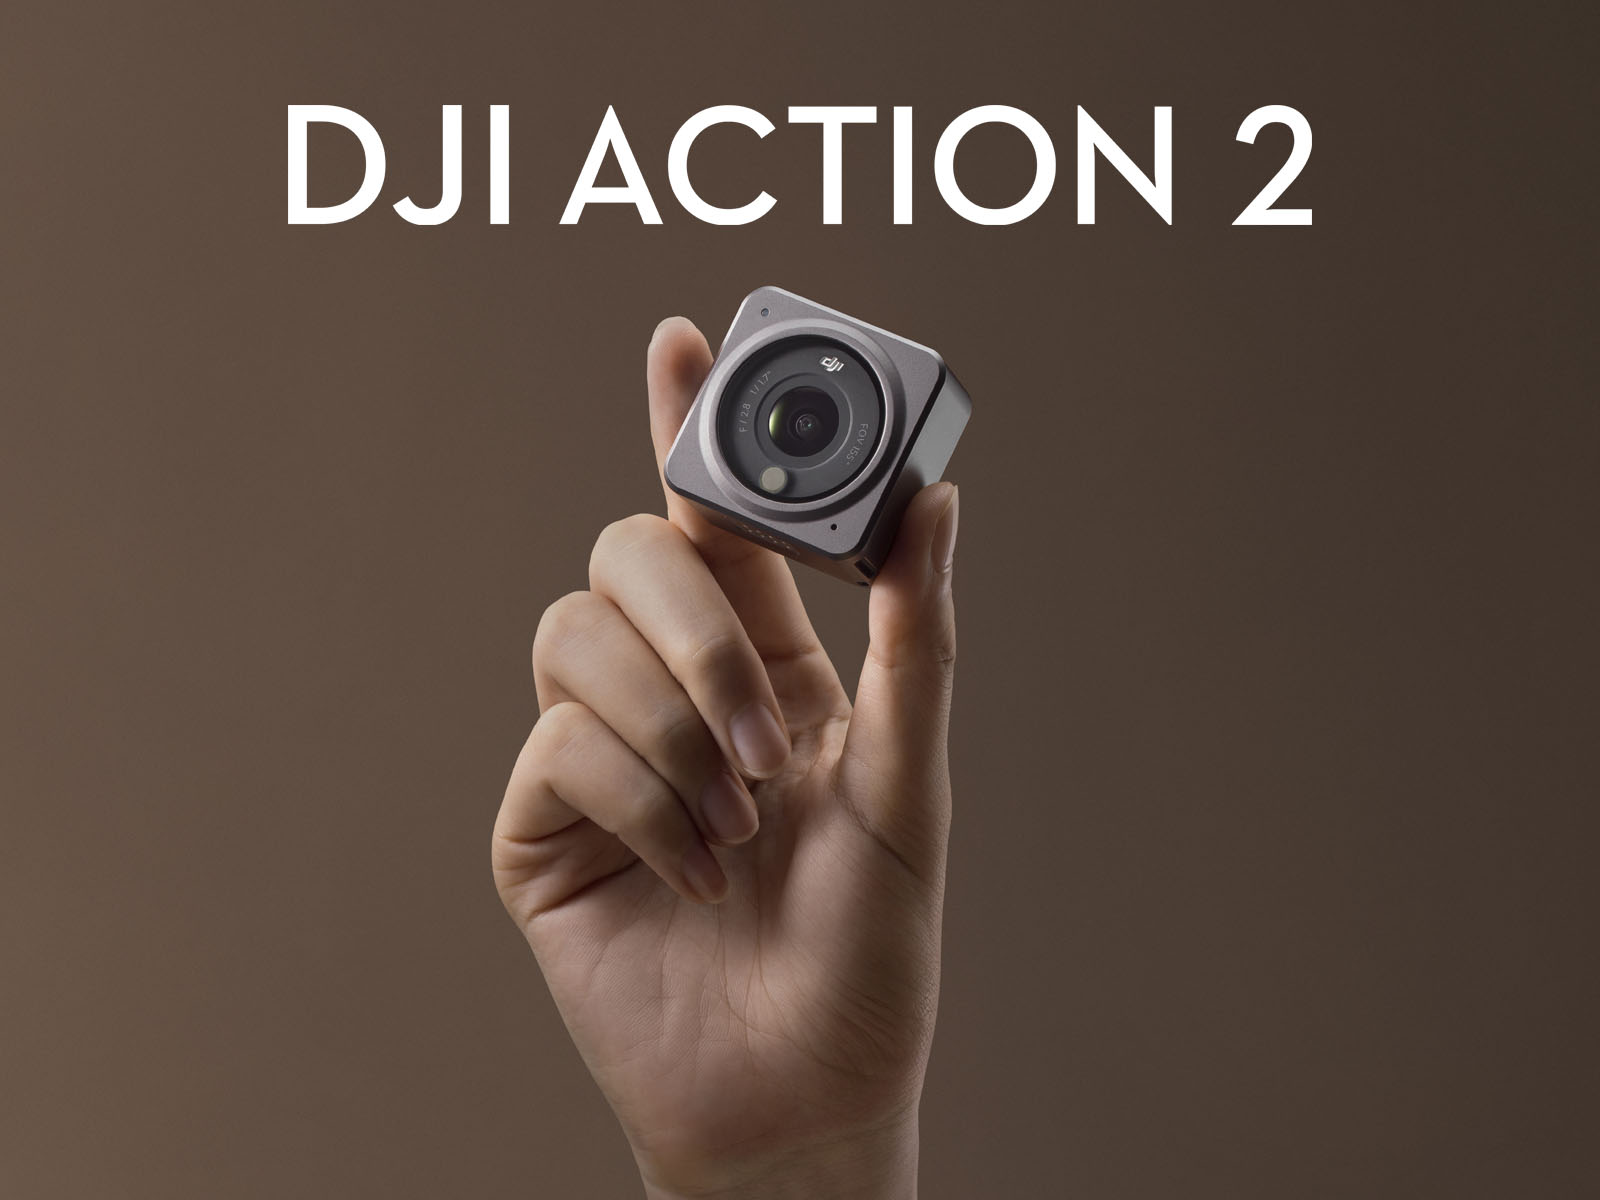 DJI Action 2